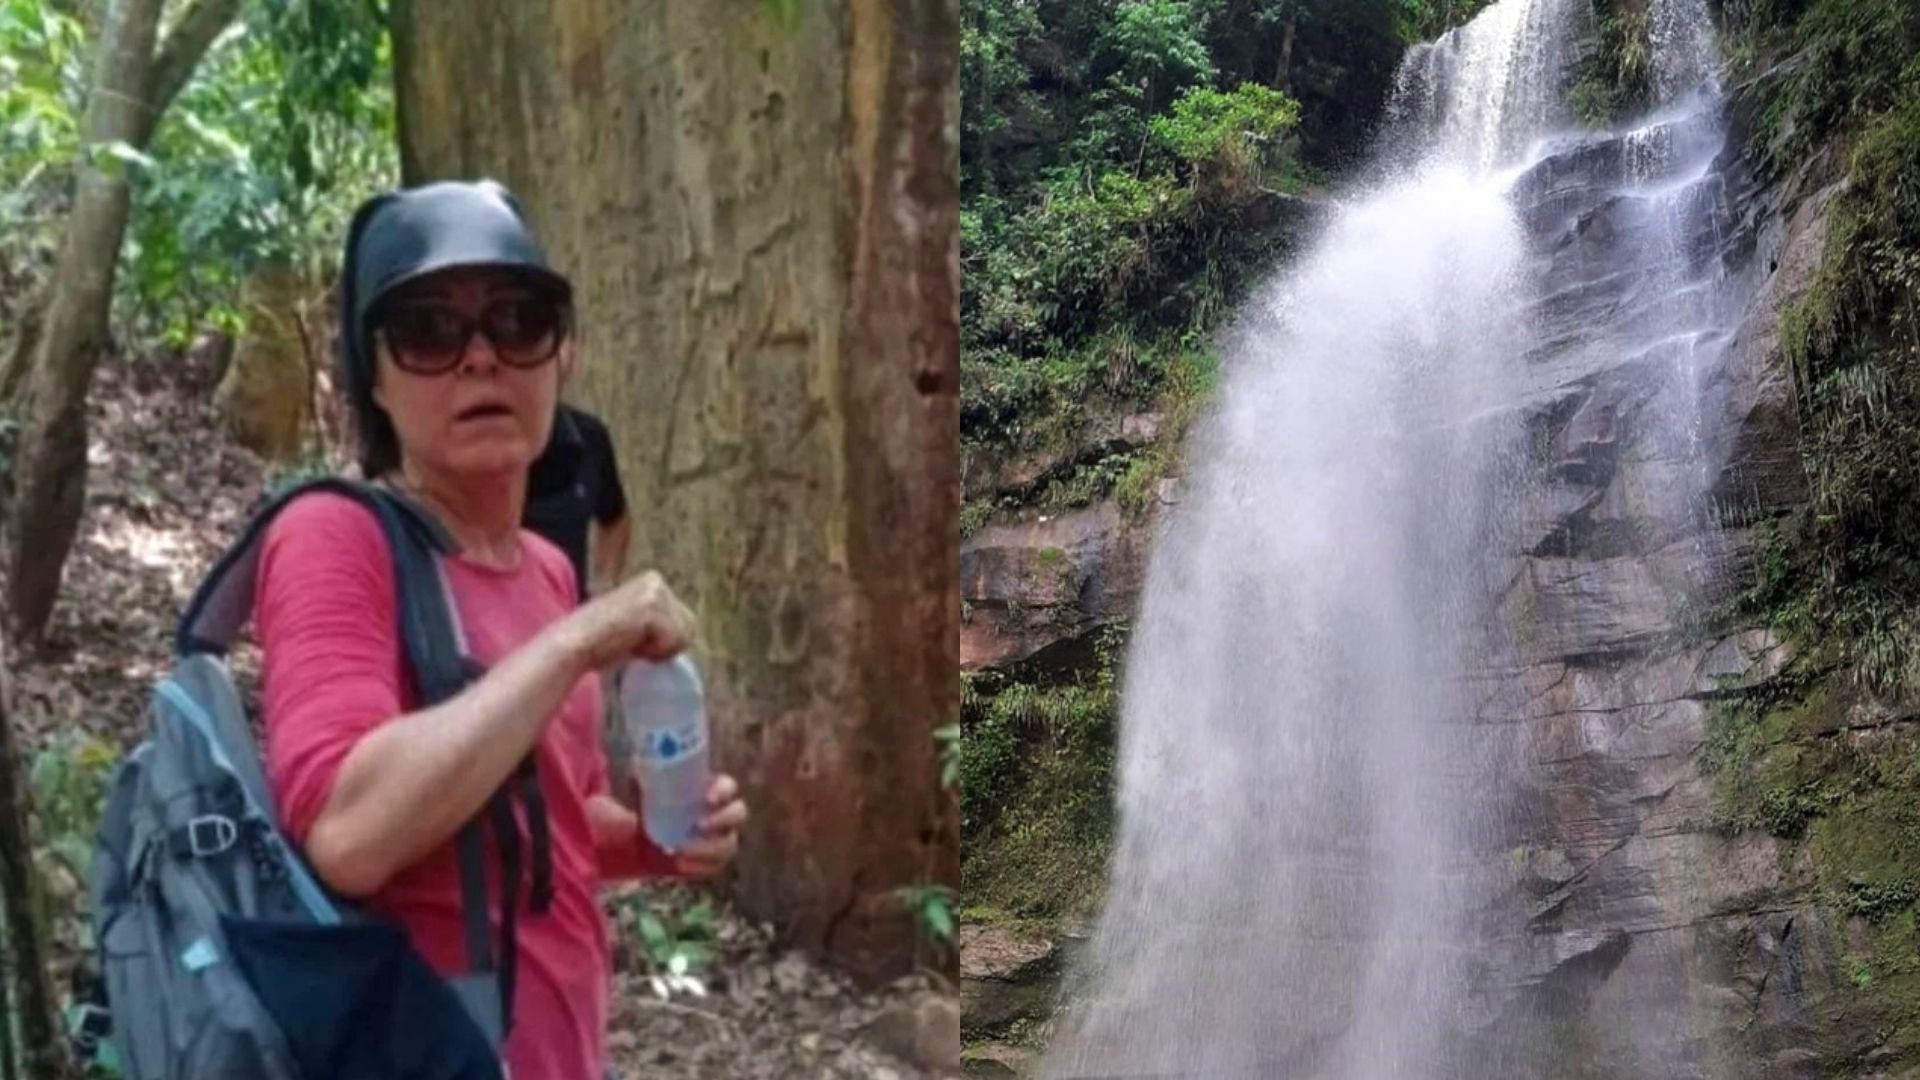 Cachoeira onde idosa desapareceu é interditada no primeiro final de semana após o ocorrido